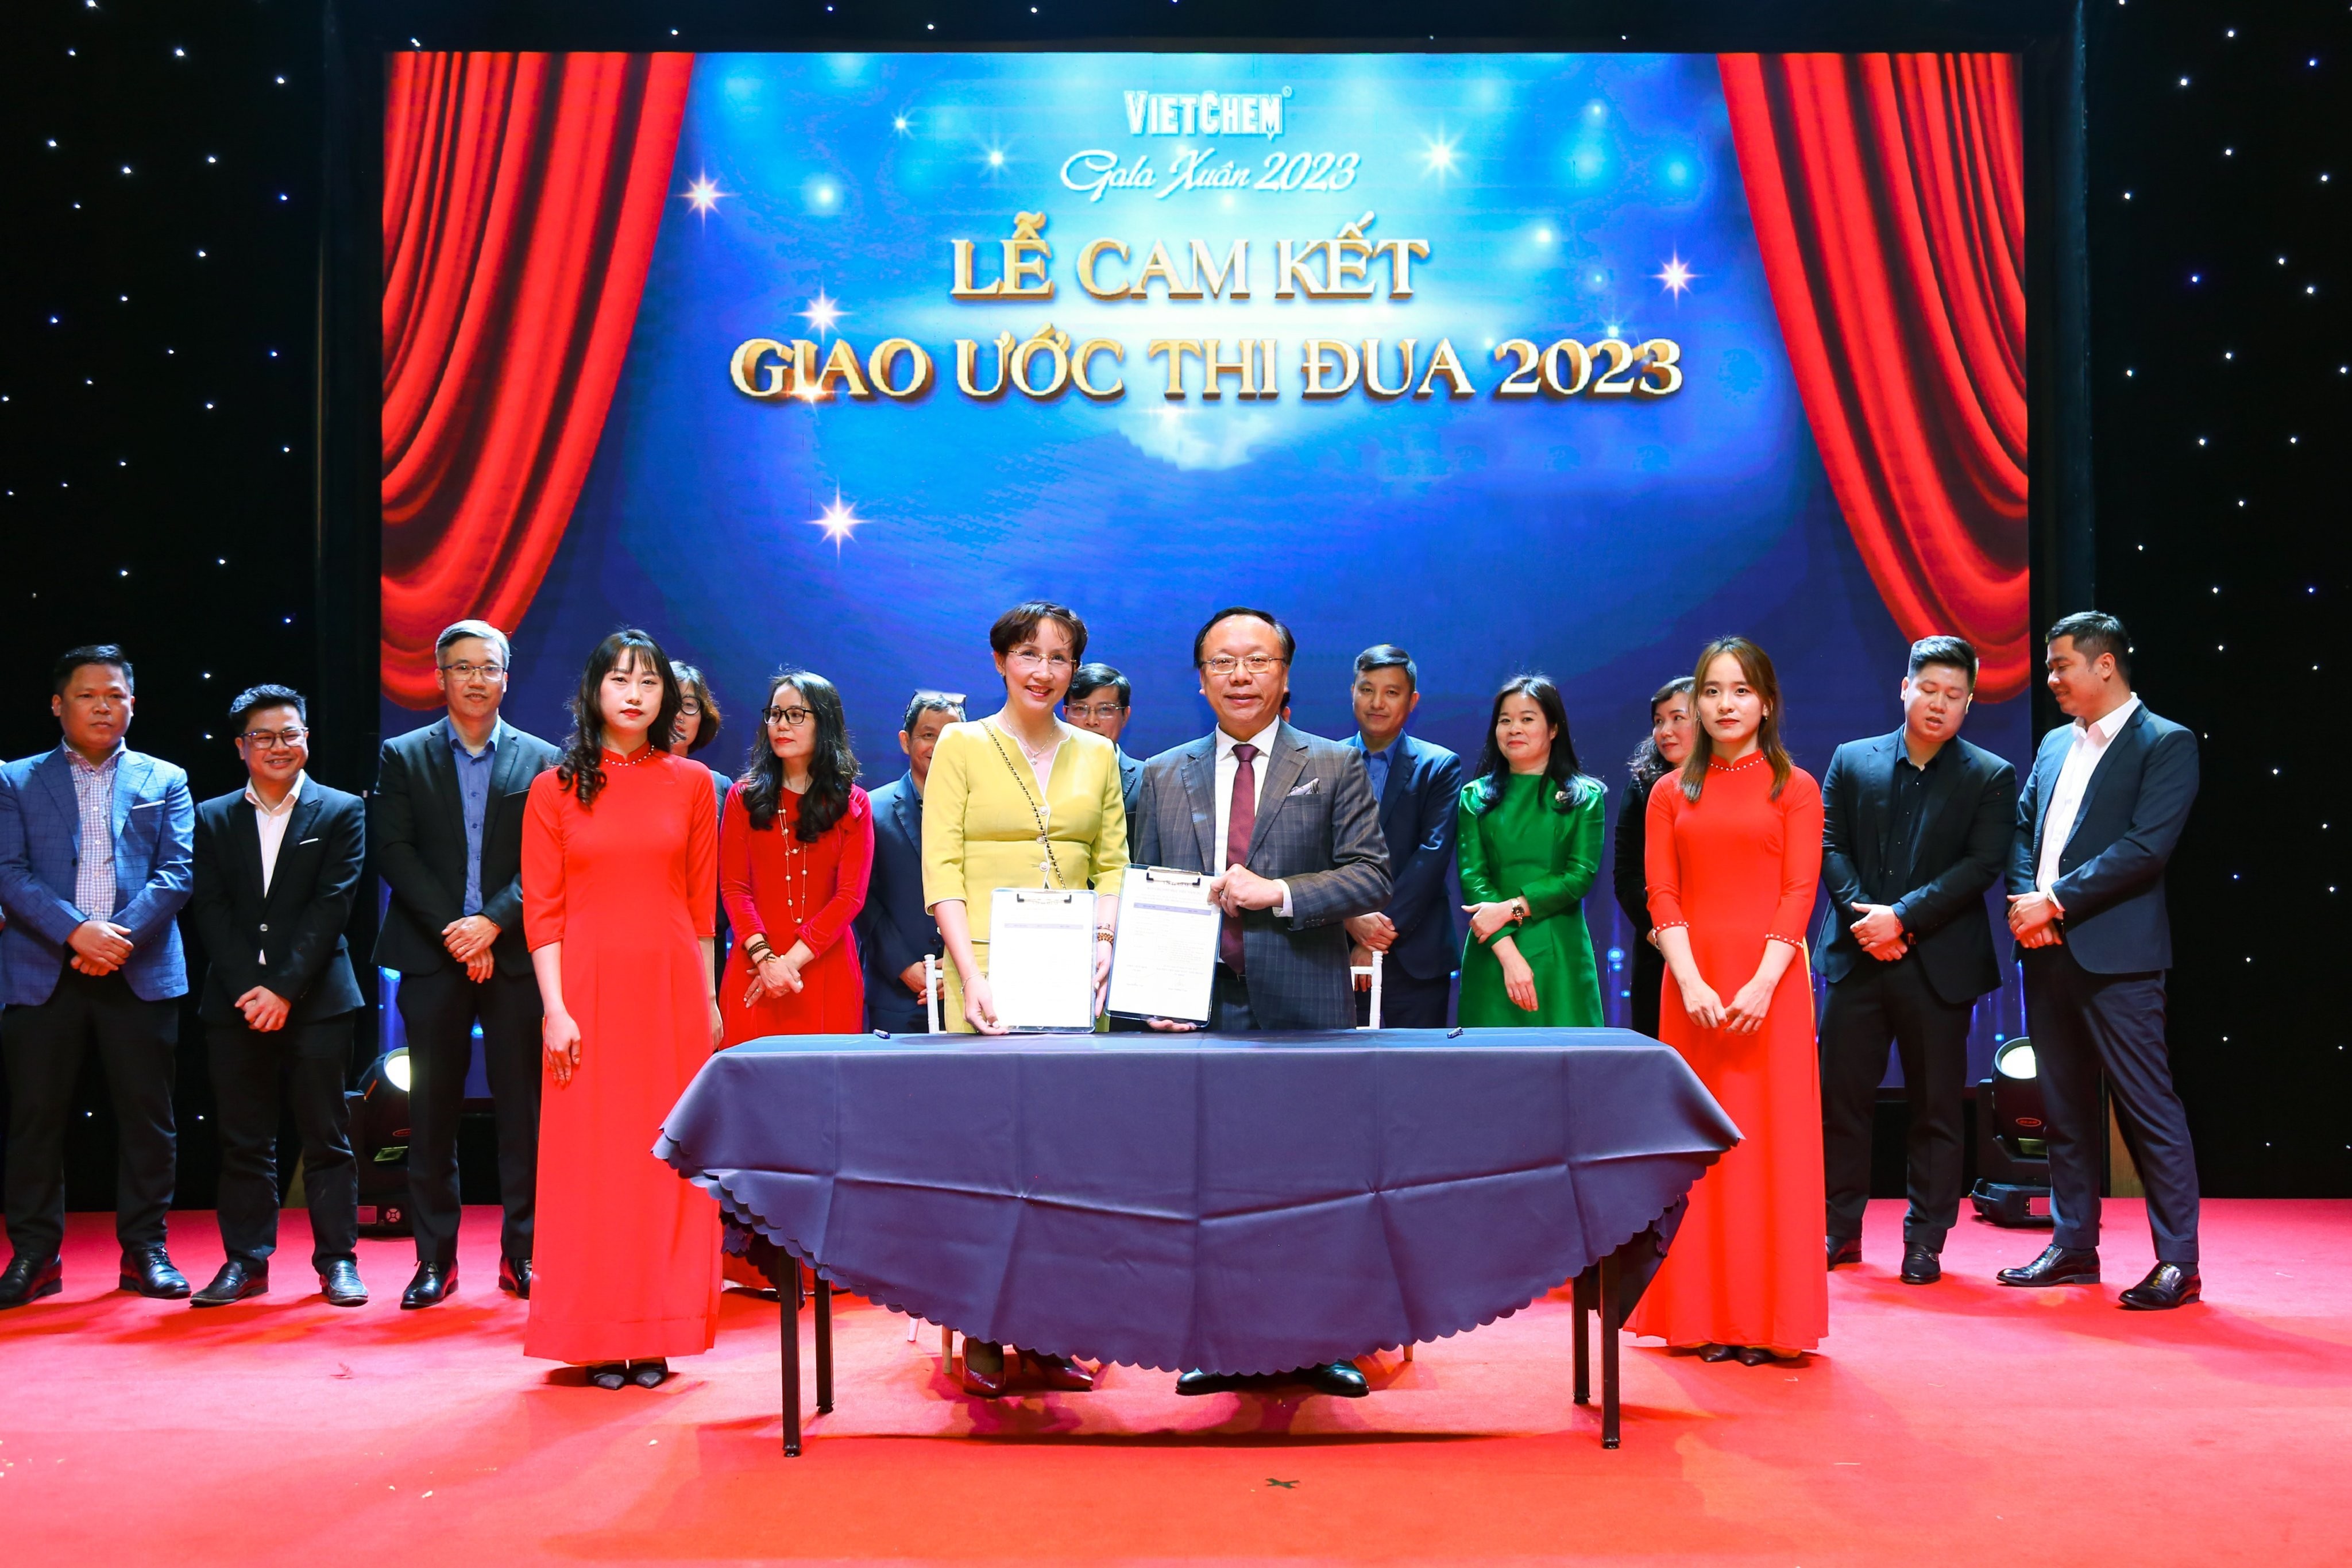 Tiếp theo, CÔNG TY KIM NGƯU - CÔNG TY TÂN THÀNH, đại diện TV HĐQT bà Đinh Phương Thảo lên cam kết.